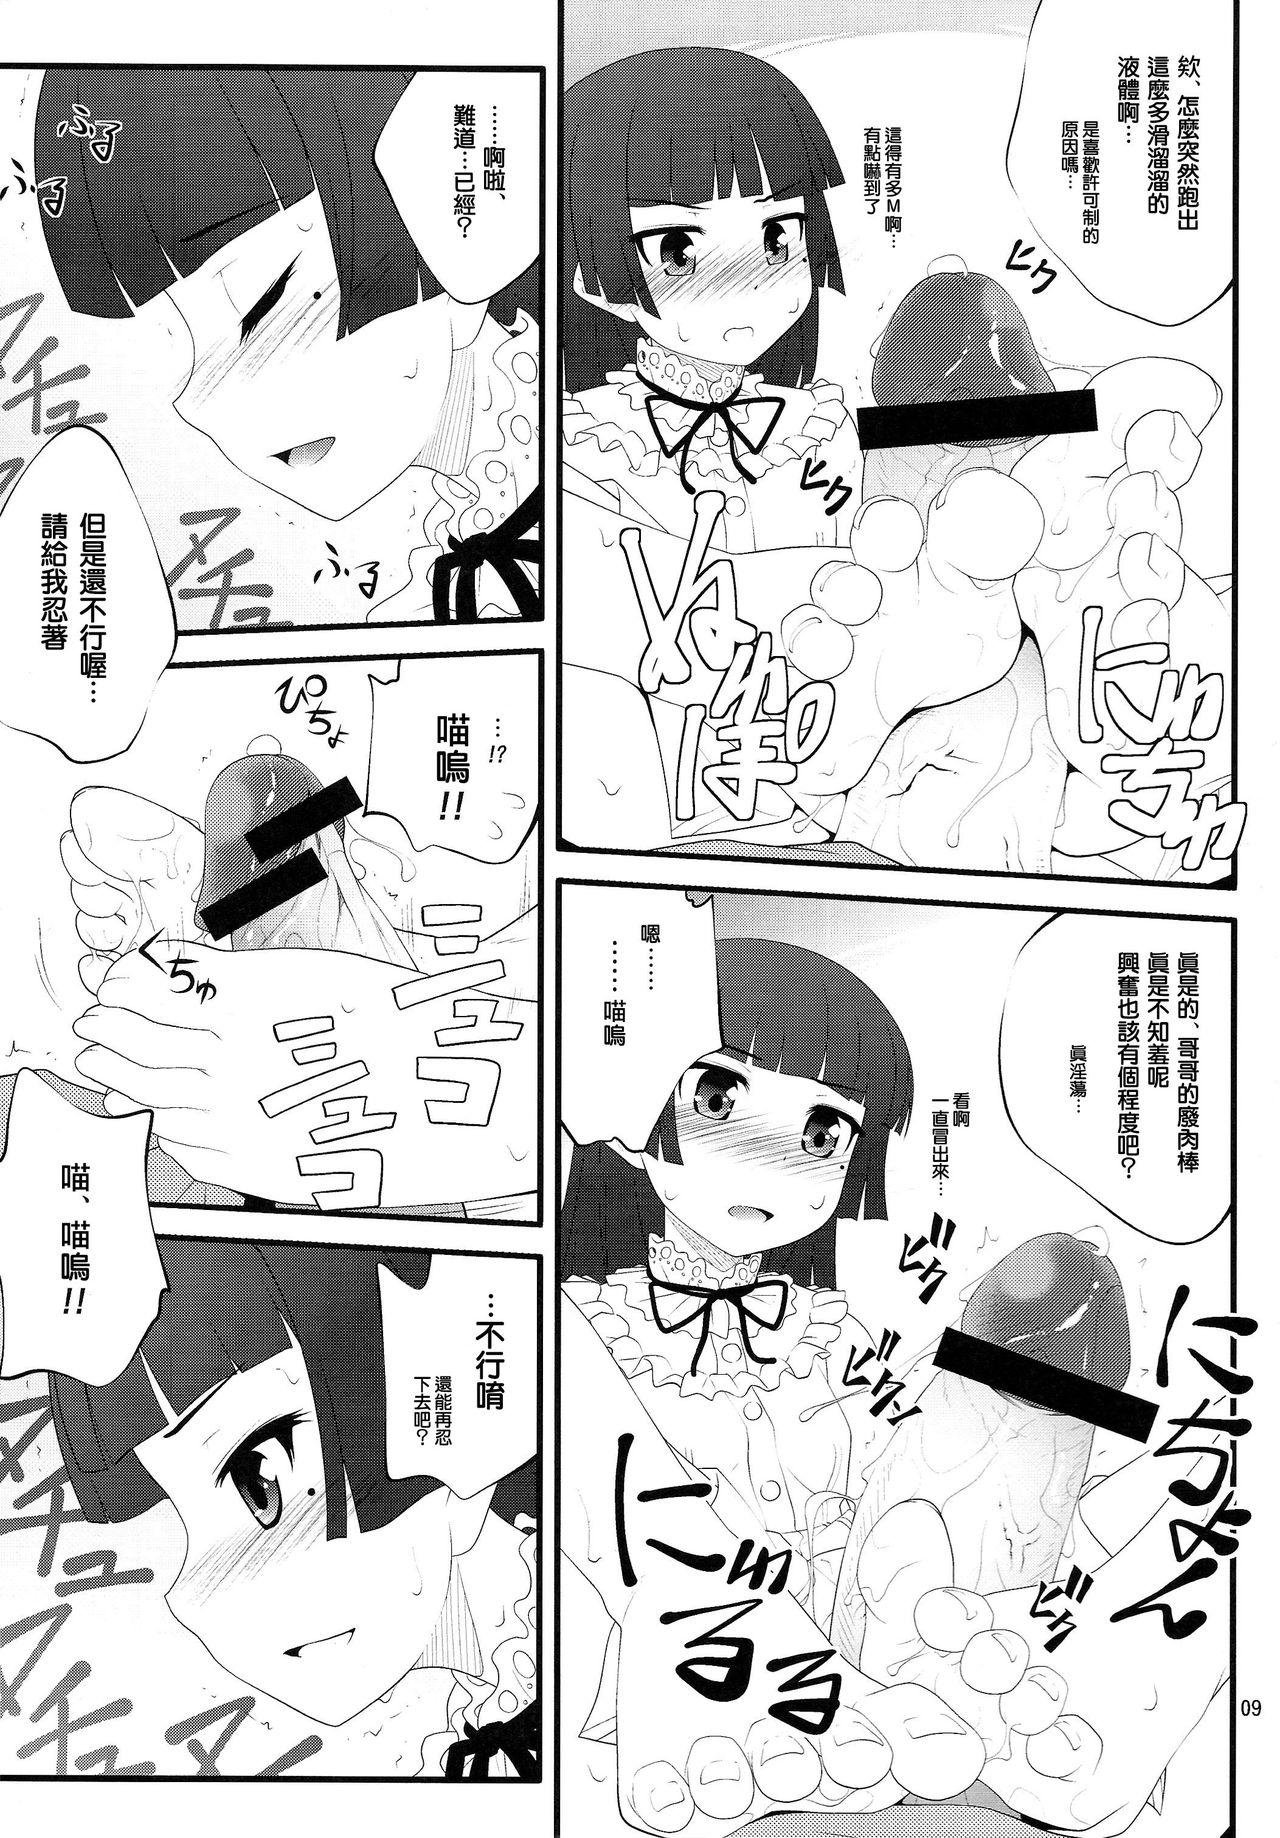 Huge Cock Nii-san, Ashi Monde Choudai After - Ore no imouto ga konna ni kawaii wake ga nai X - Page 9